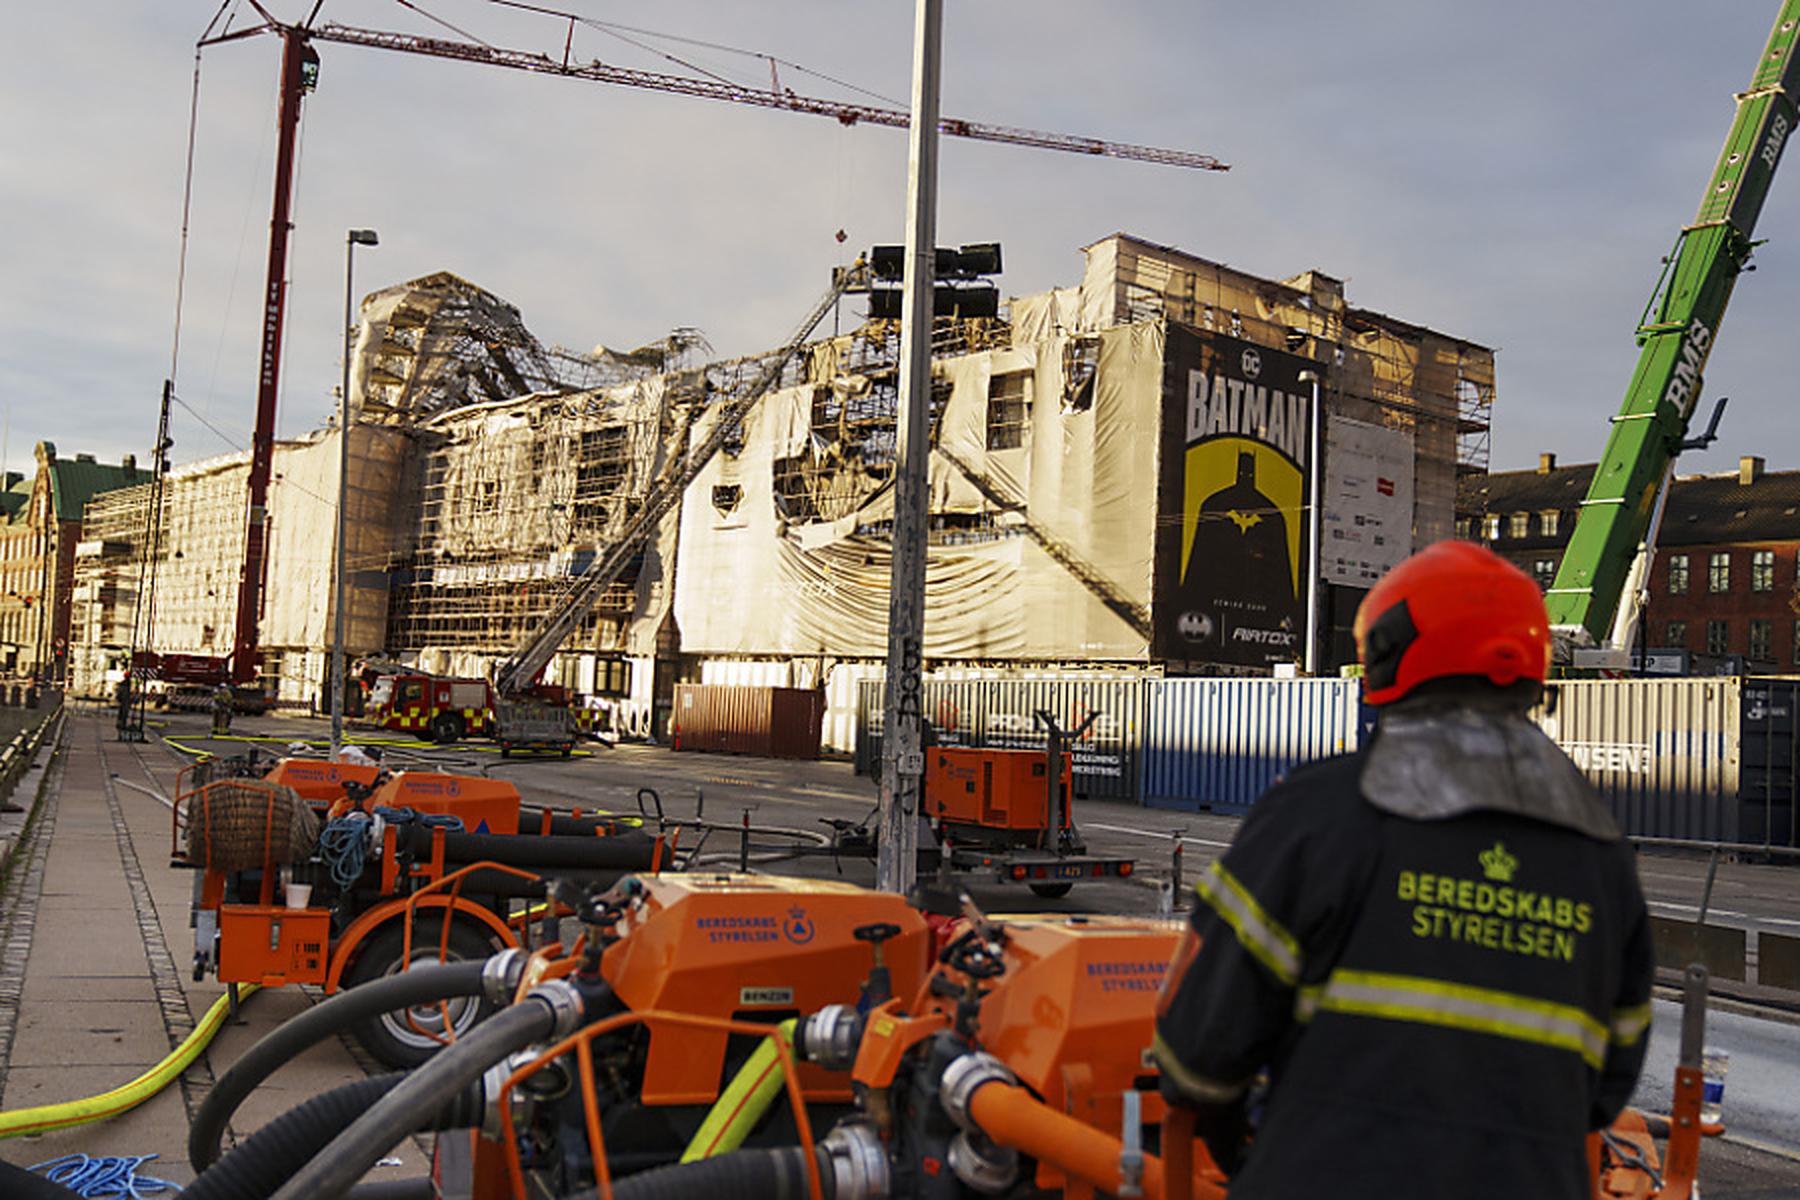 Kopenhagen: Feuerwehr in Kopenhagen mindestens noch einen Tag im Einsatz